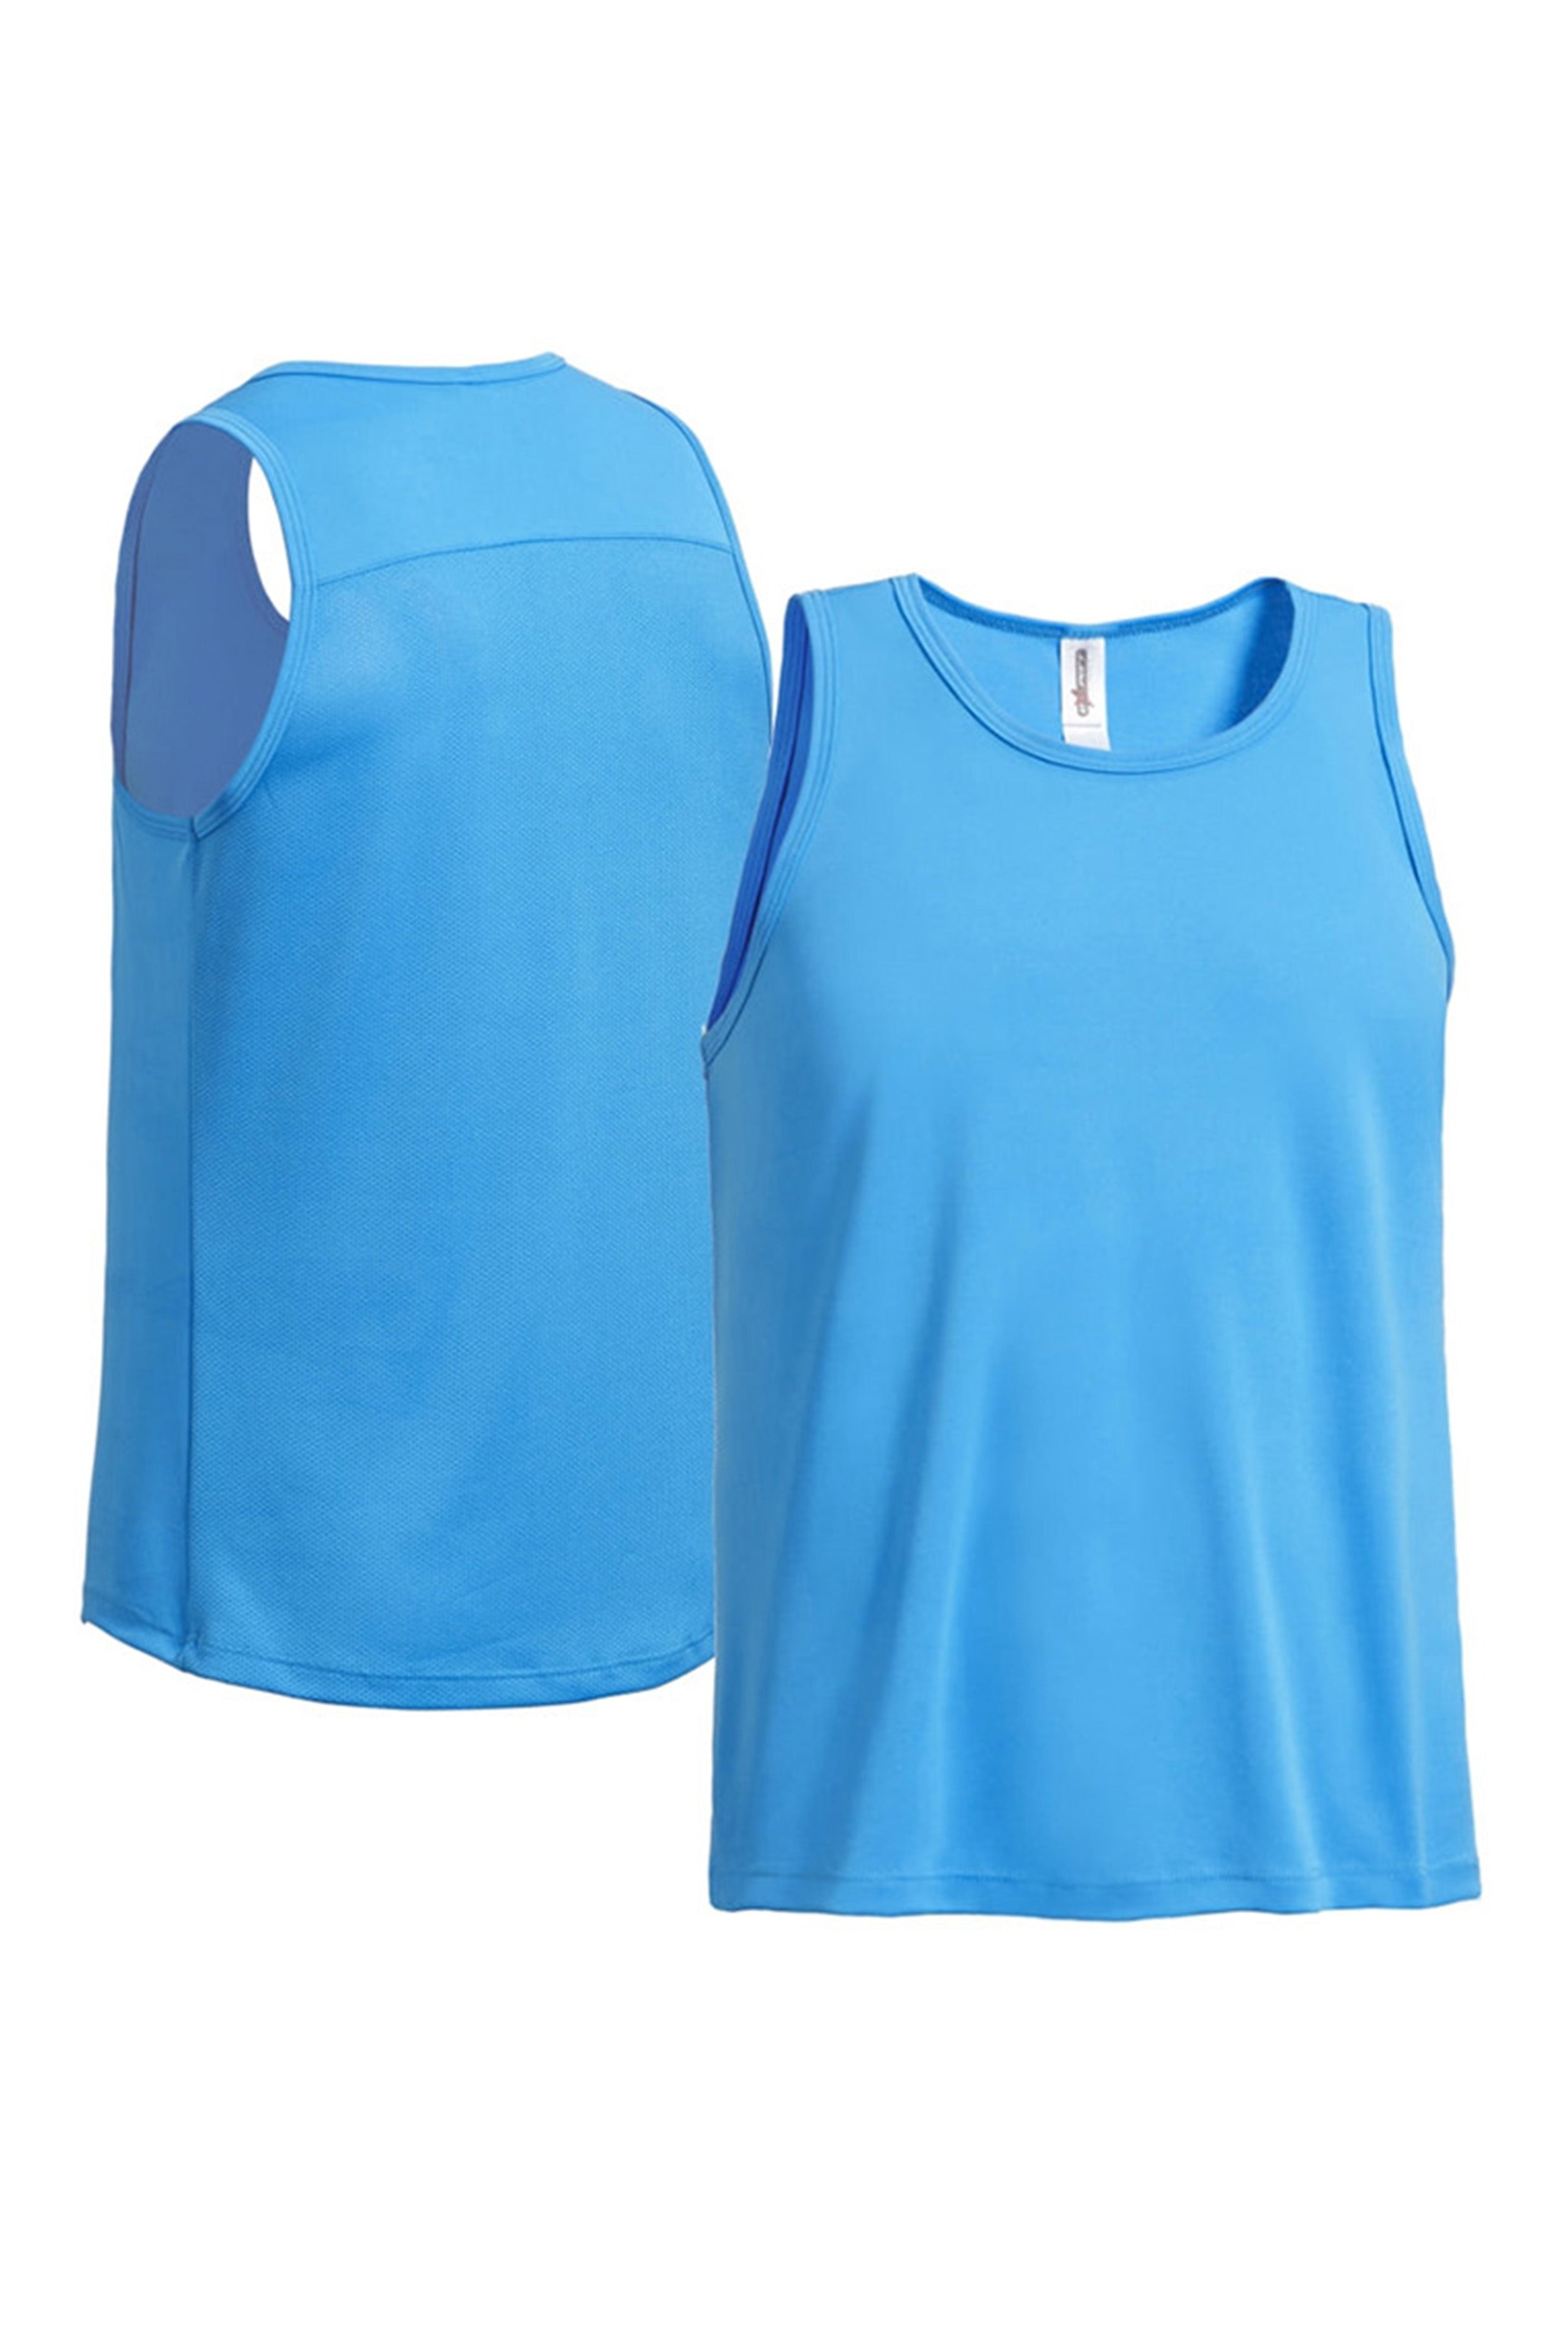 Men's DriMax Workout Sleeveless Mesh Tech T-Shirt